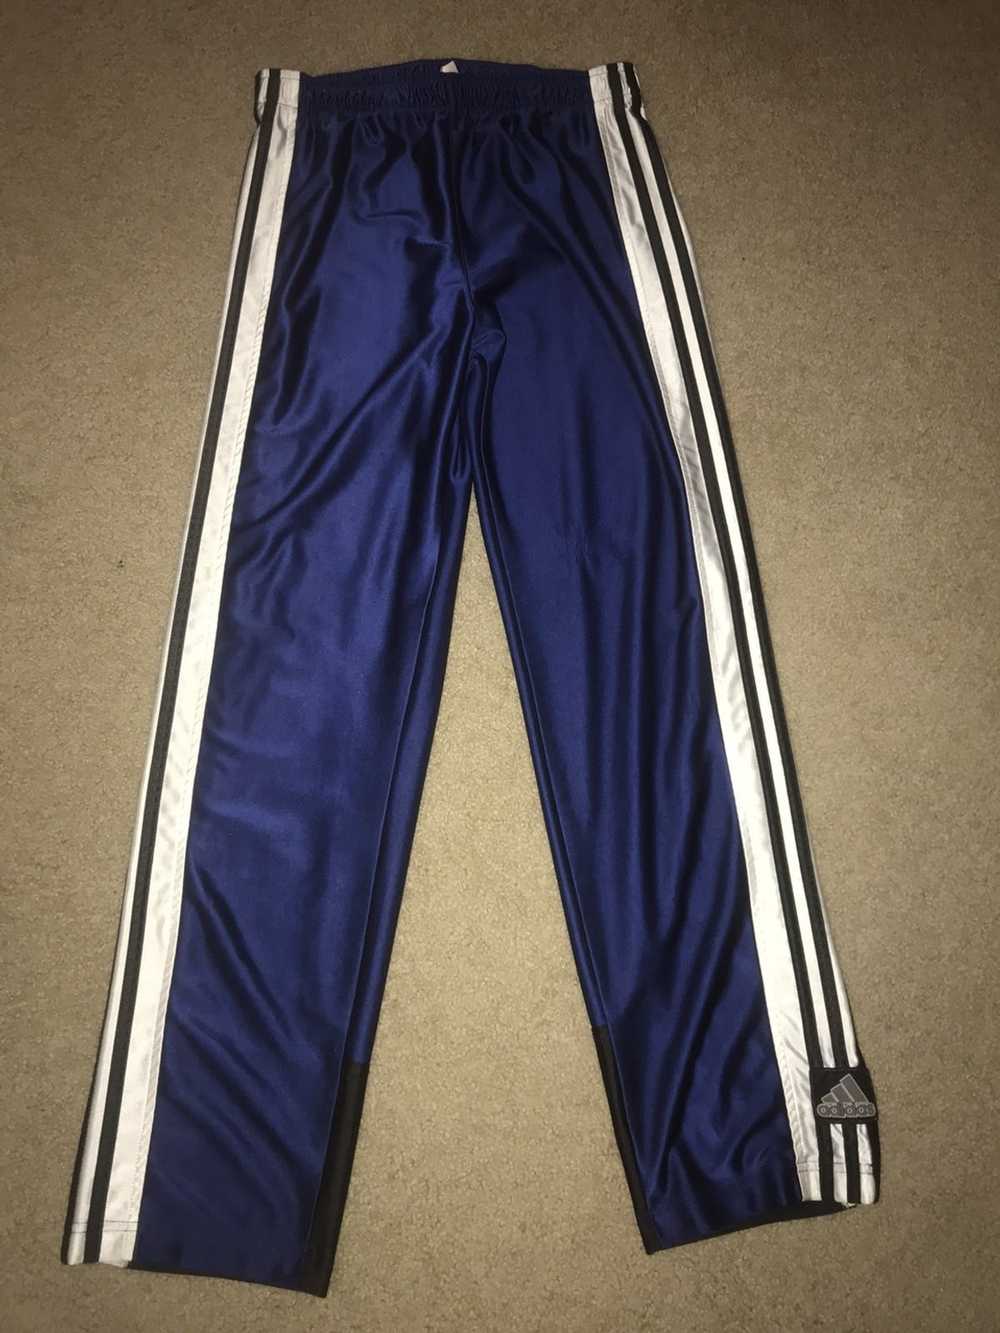 Set of 2: Vintage 90s ADIDAS Track Pants Streetwear 3-Stripe sz Med Blue  VTG